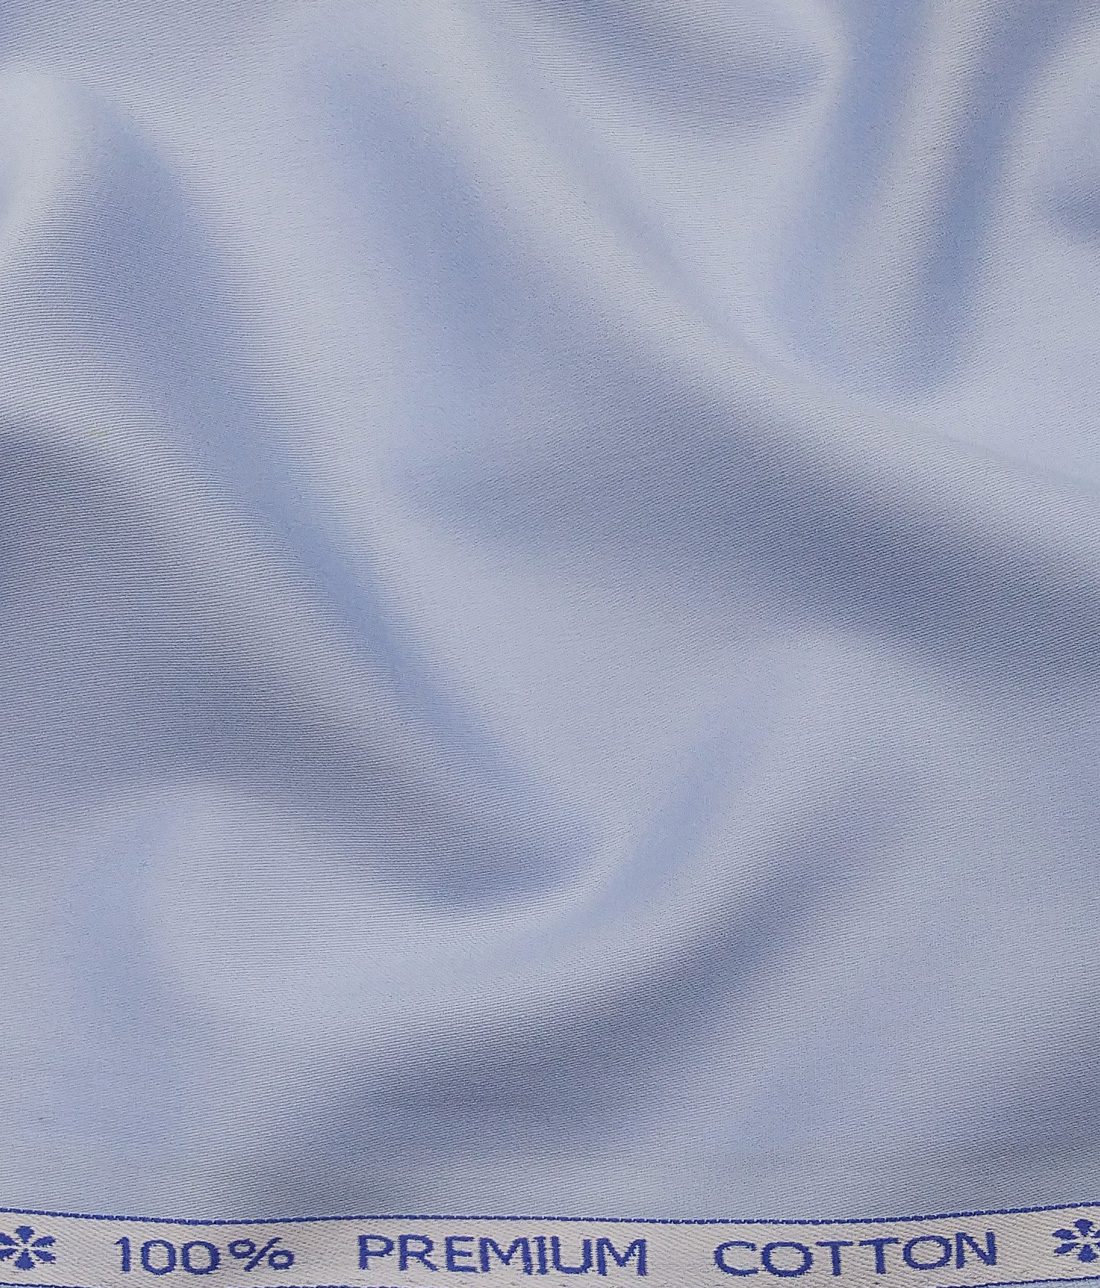 Arvind Men's 100% Premium Cotton Solids Stretchable Shirt Fabric ( Light  Blue, 1.60 Meter)